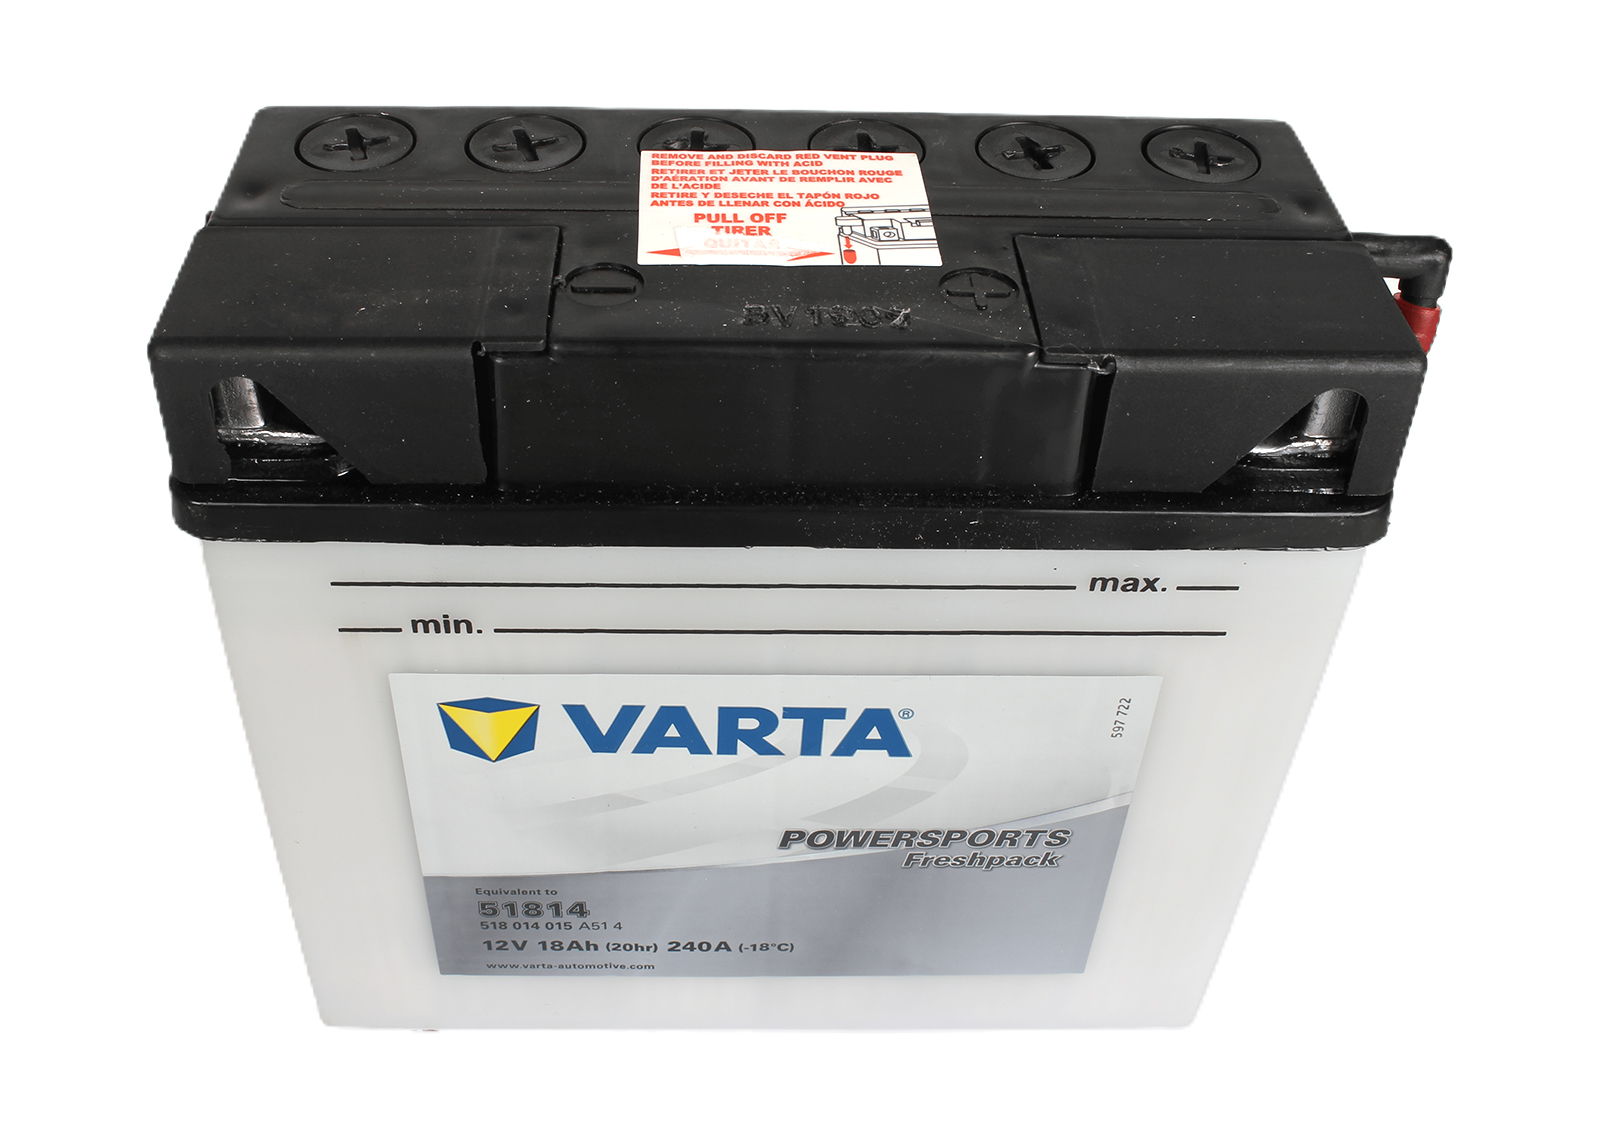 Аккумуляторная батарея VARTA белая 51814 6СТ18 518 014 015 фотография №2